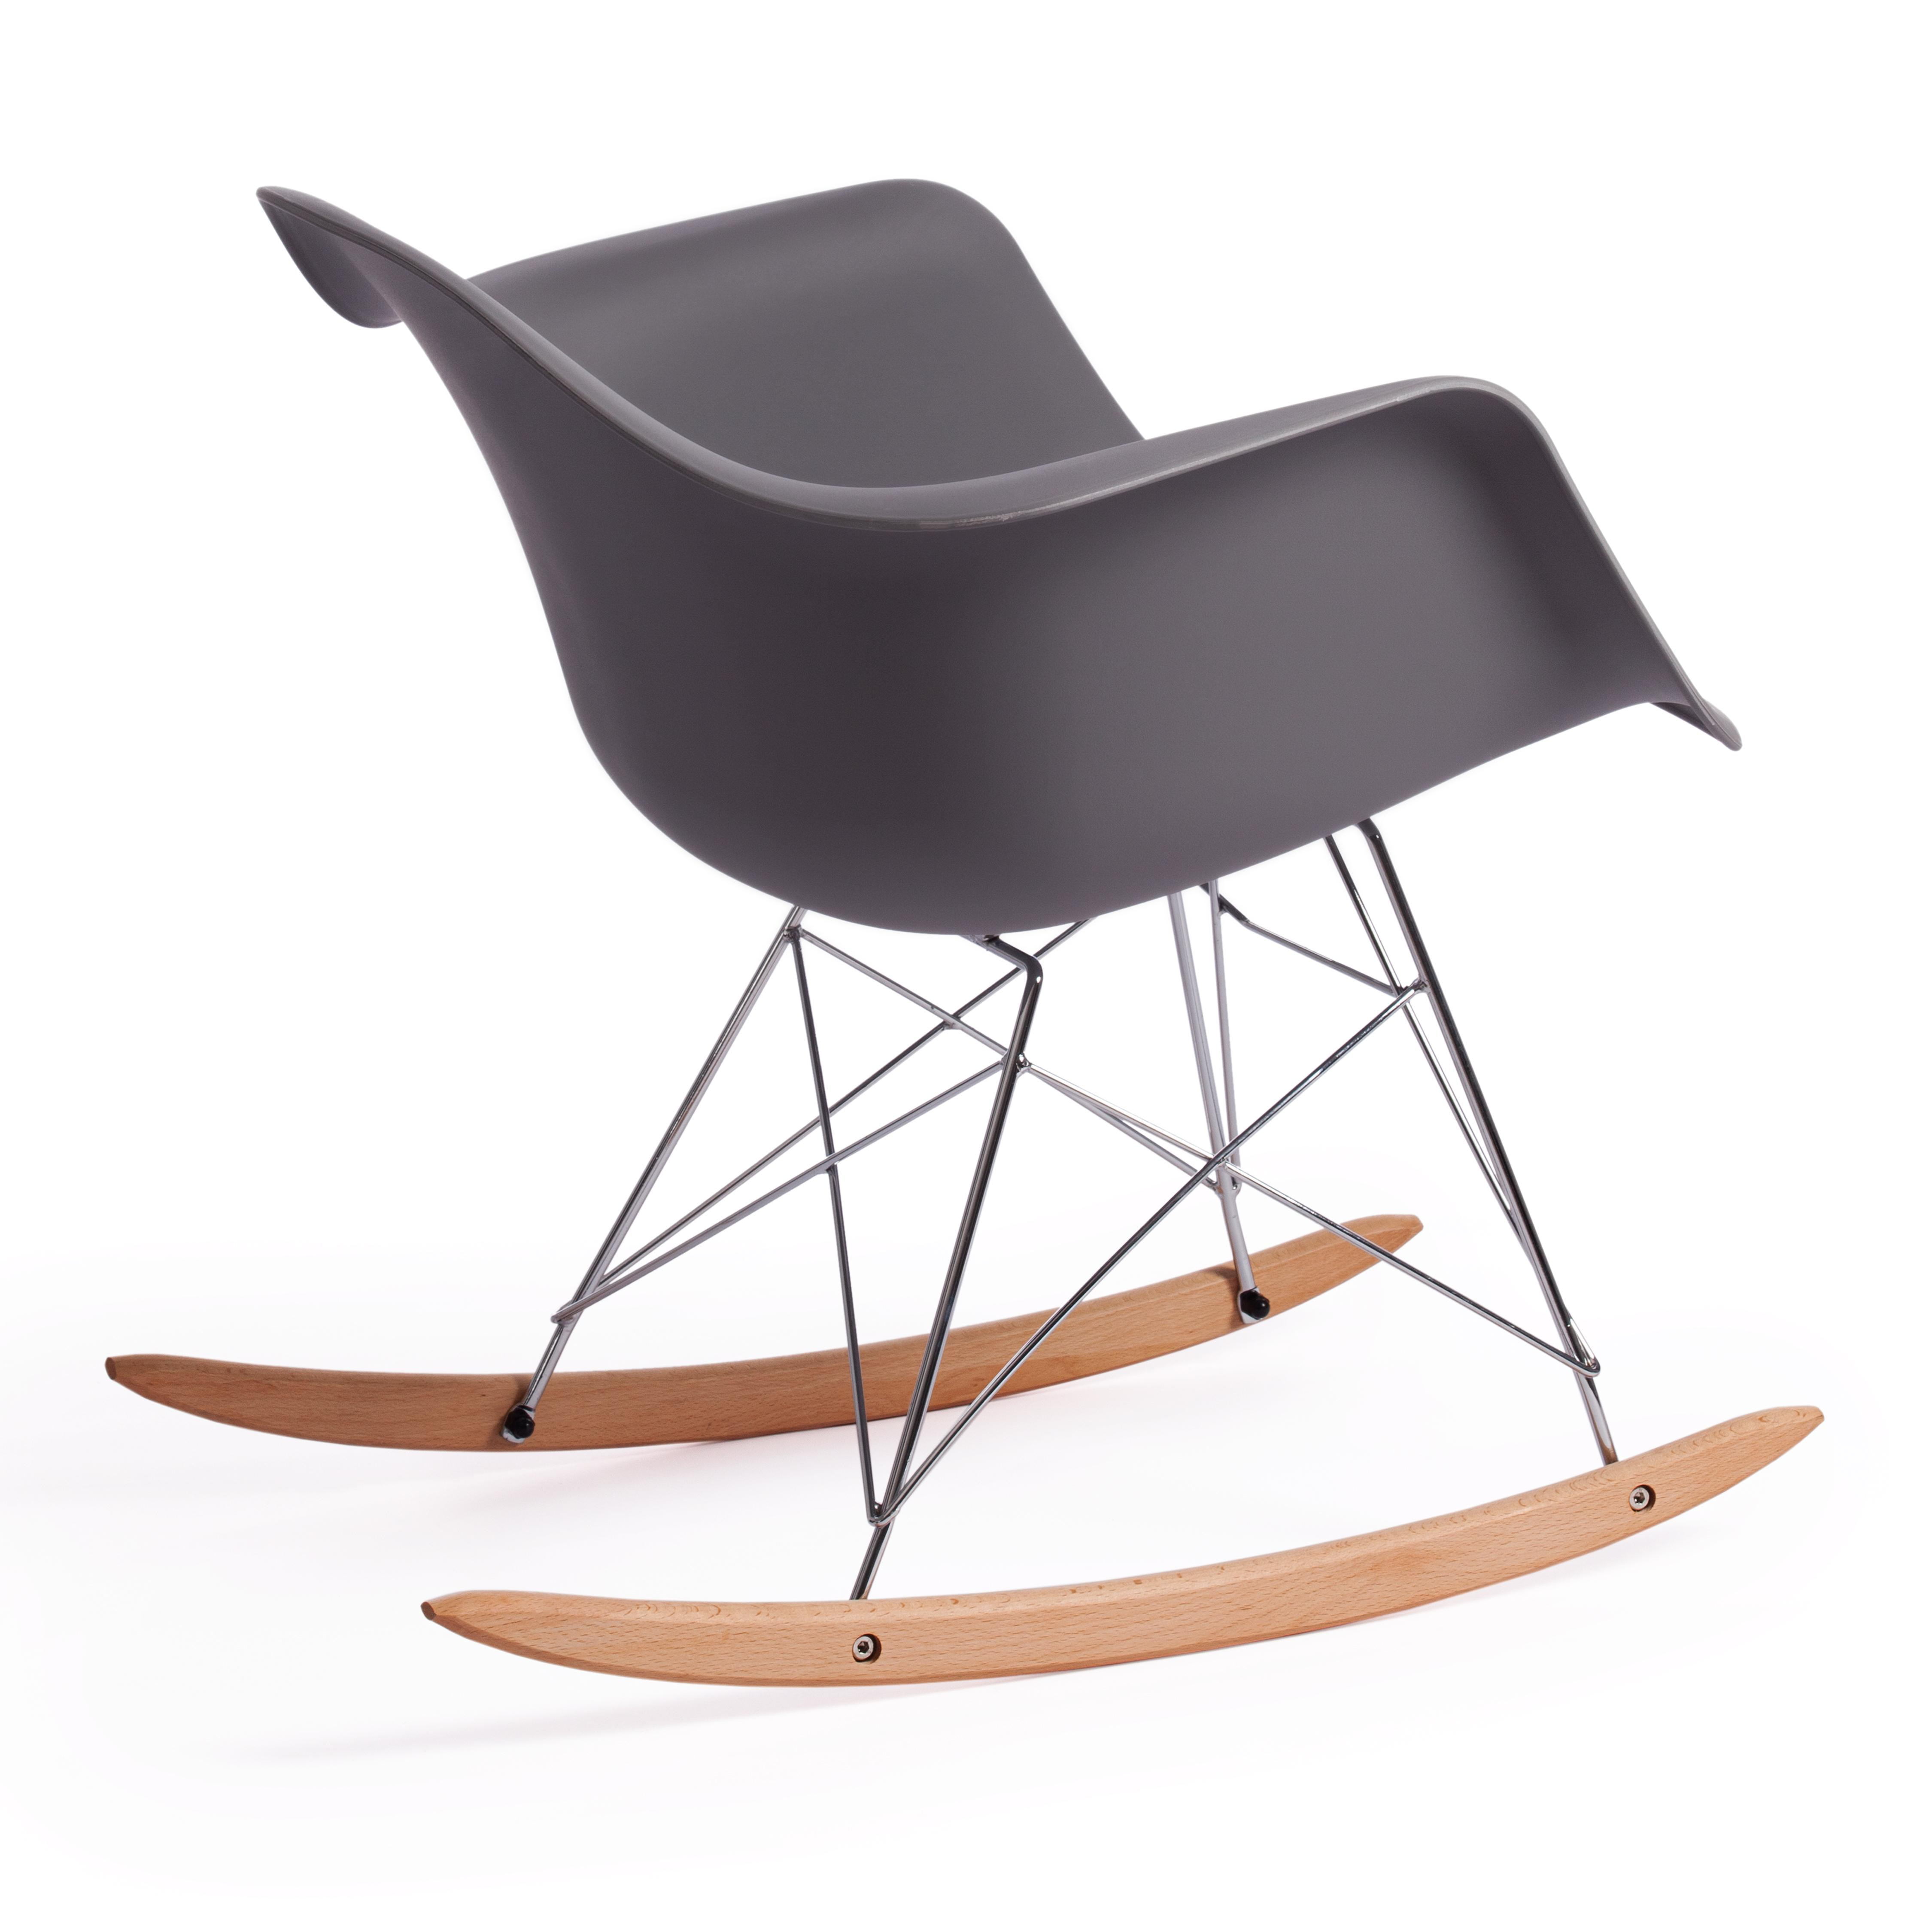 Кресло-качалка CINDY (mod. C1025A) пластик/металл/дерево, 65 х 61 х 74 см, серый 024 /натуральный